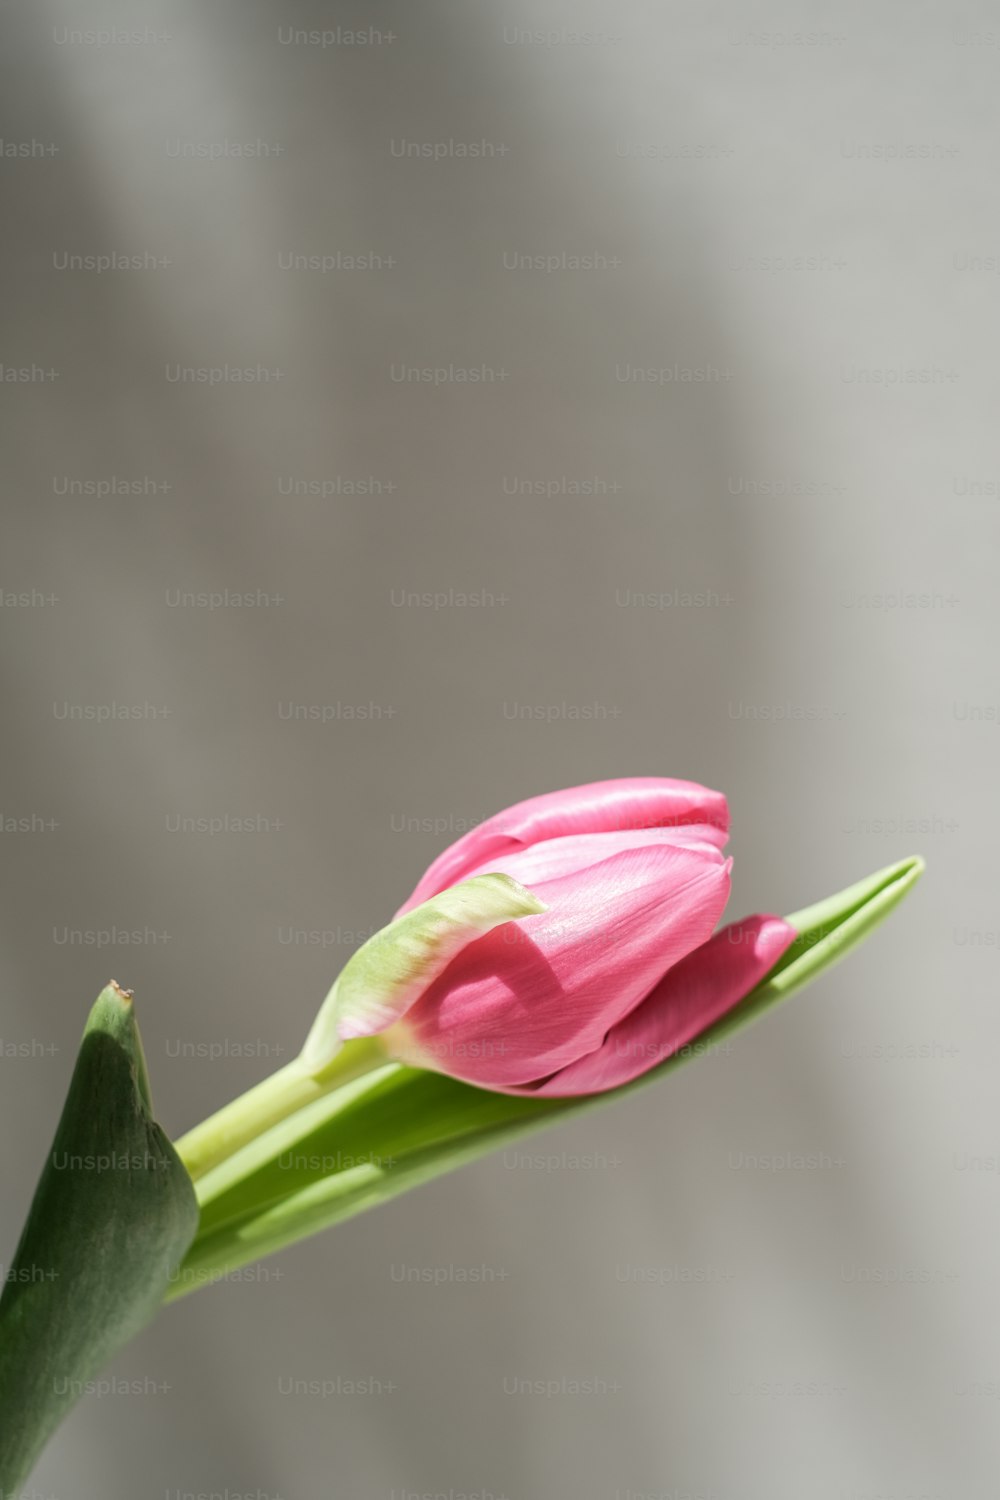 uma única flor rosa com um caule verde